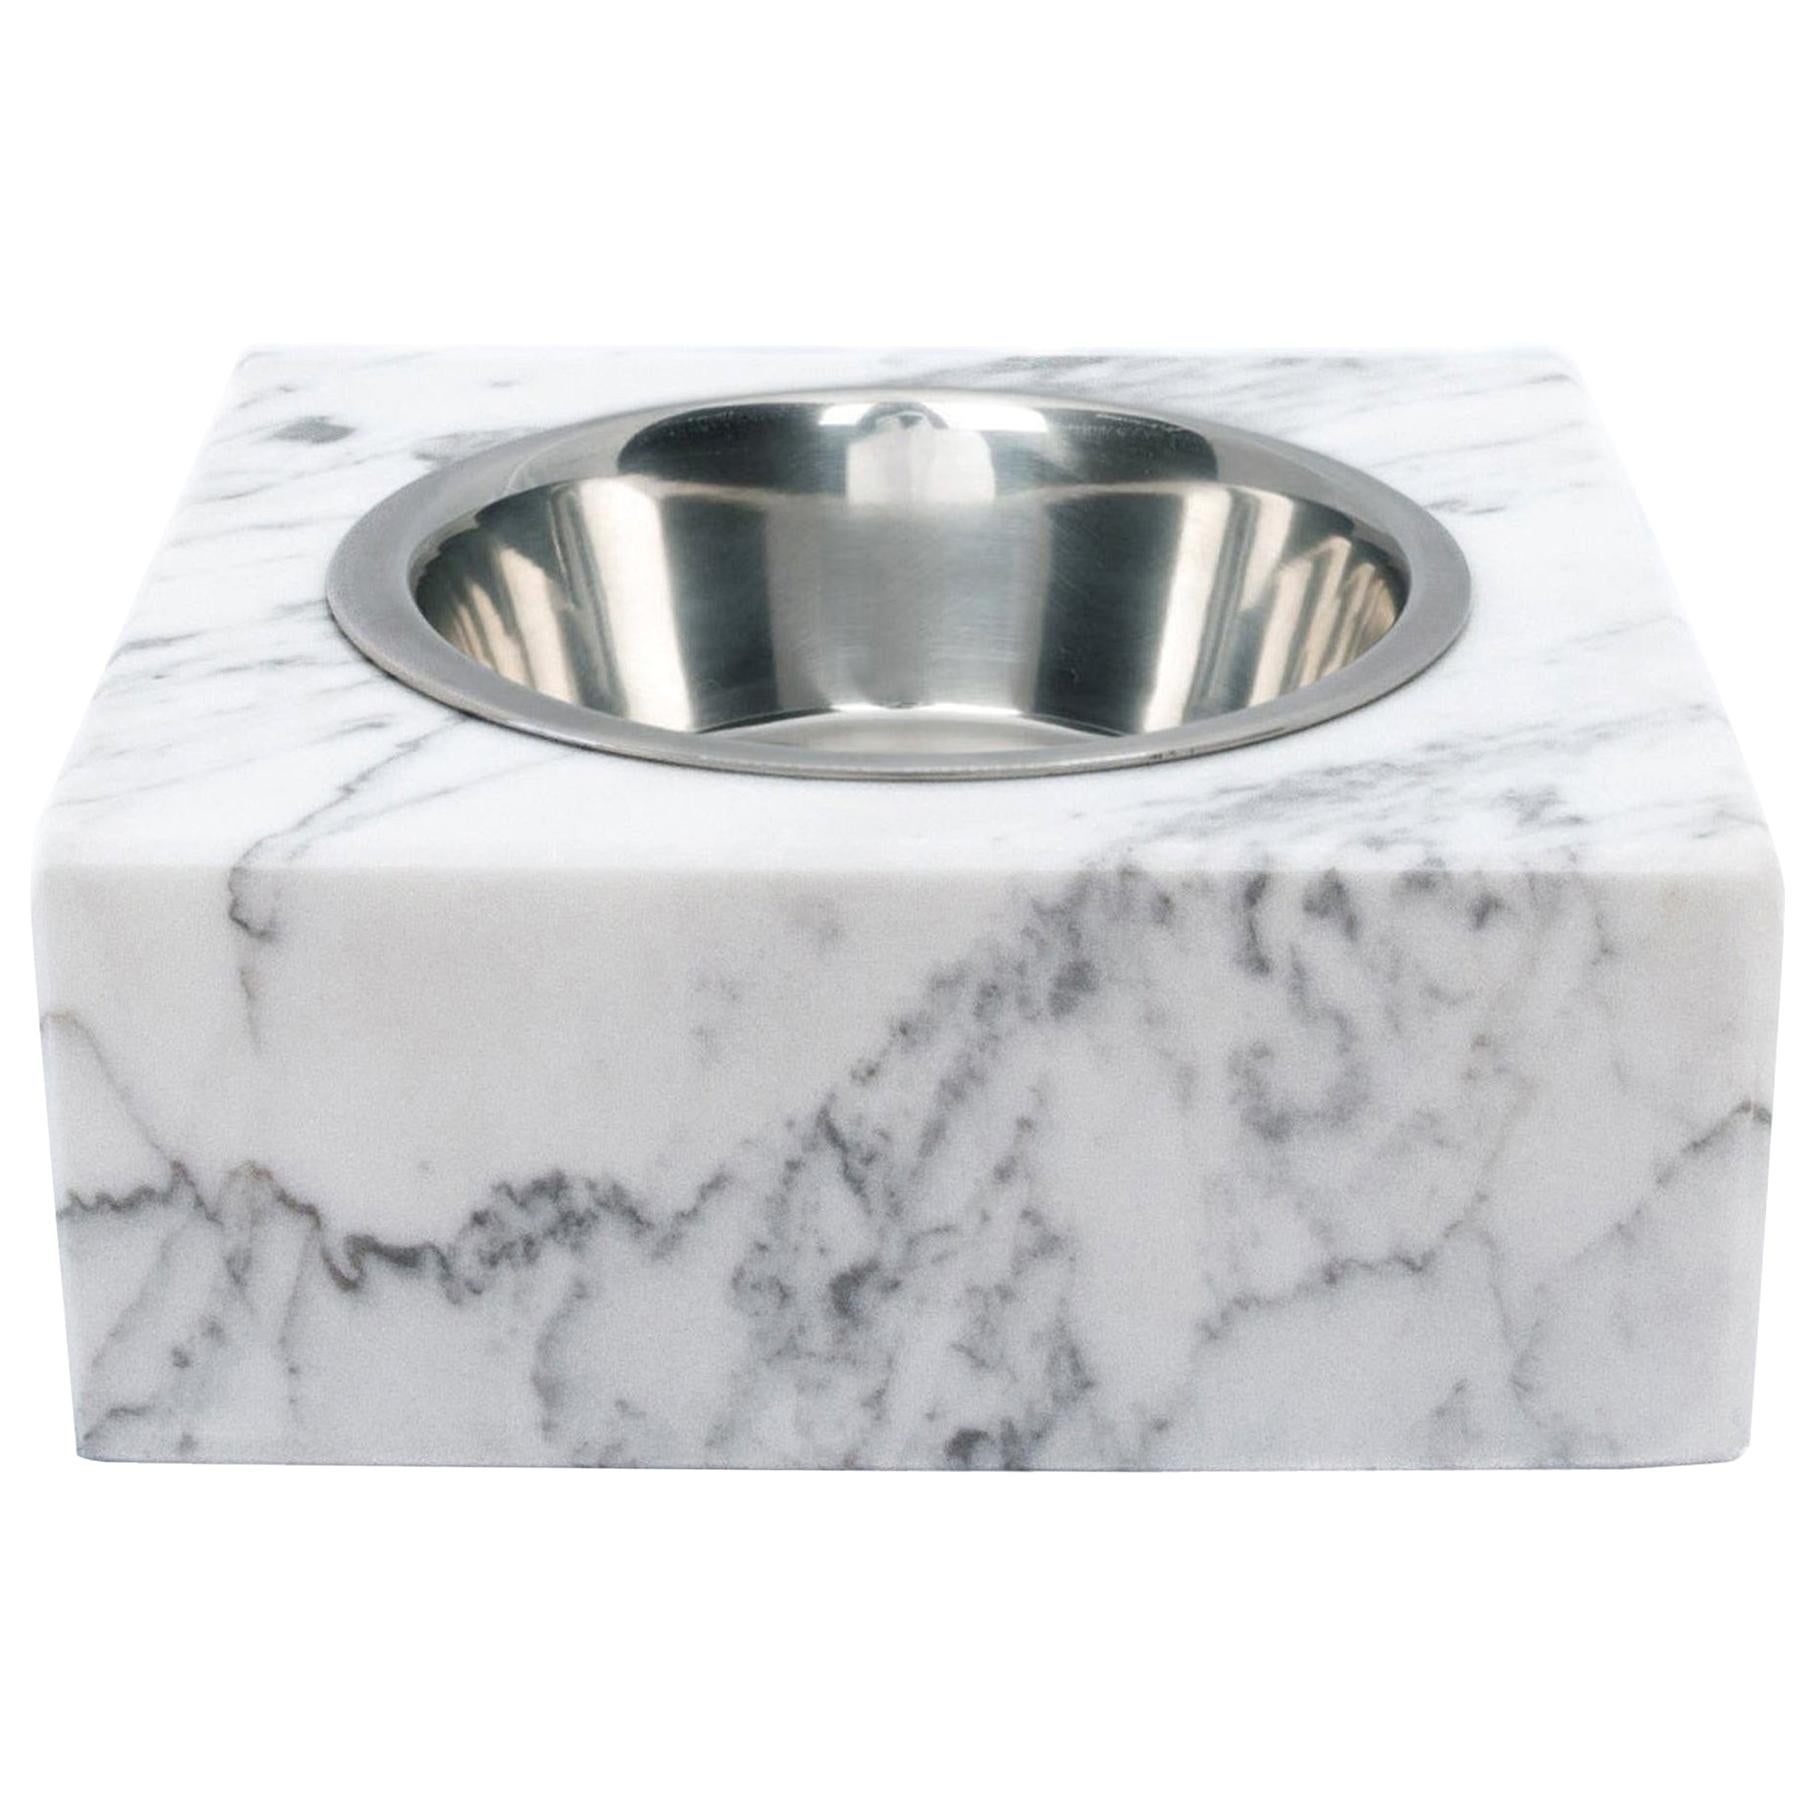 Handgefertigte, quadratische Schale für Katzen oder Hunde aus weißem Carrara-Marmor mit abnehmbarem Stahl